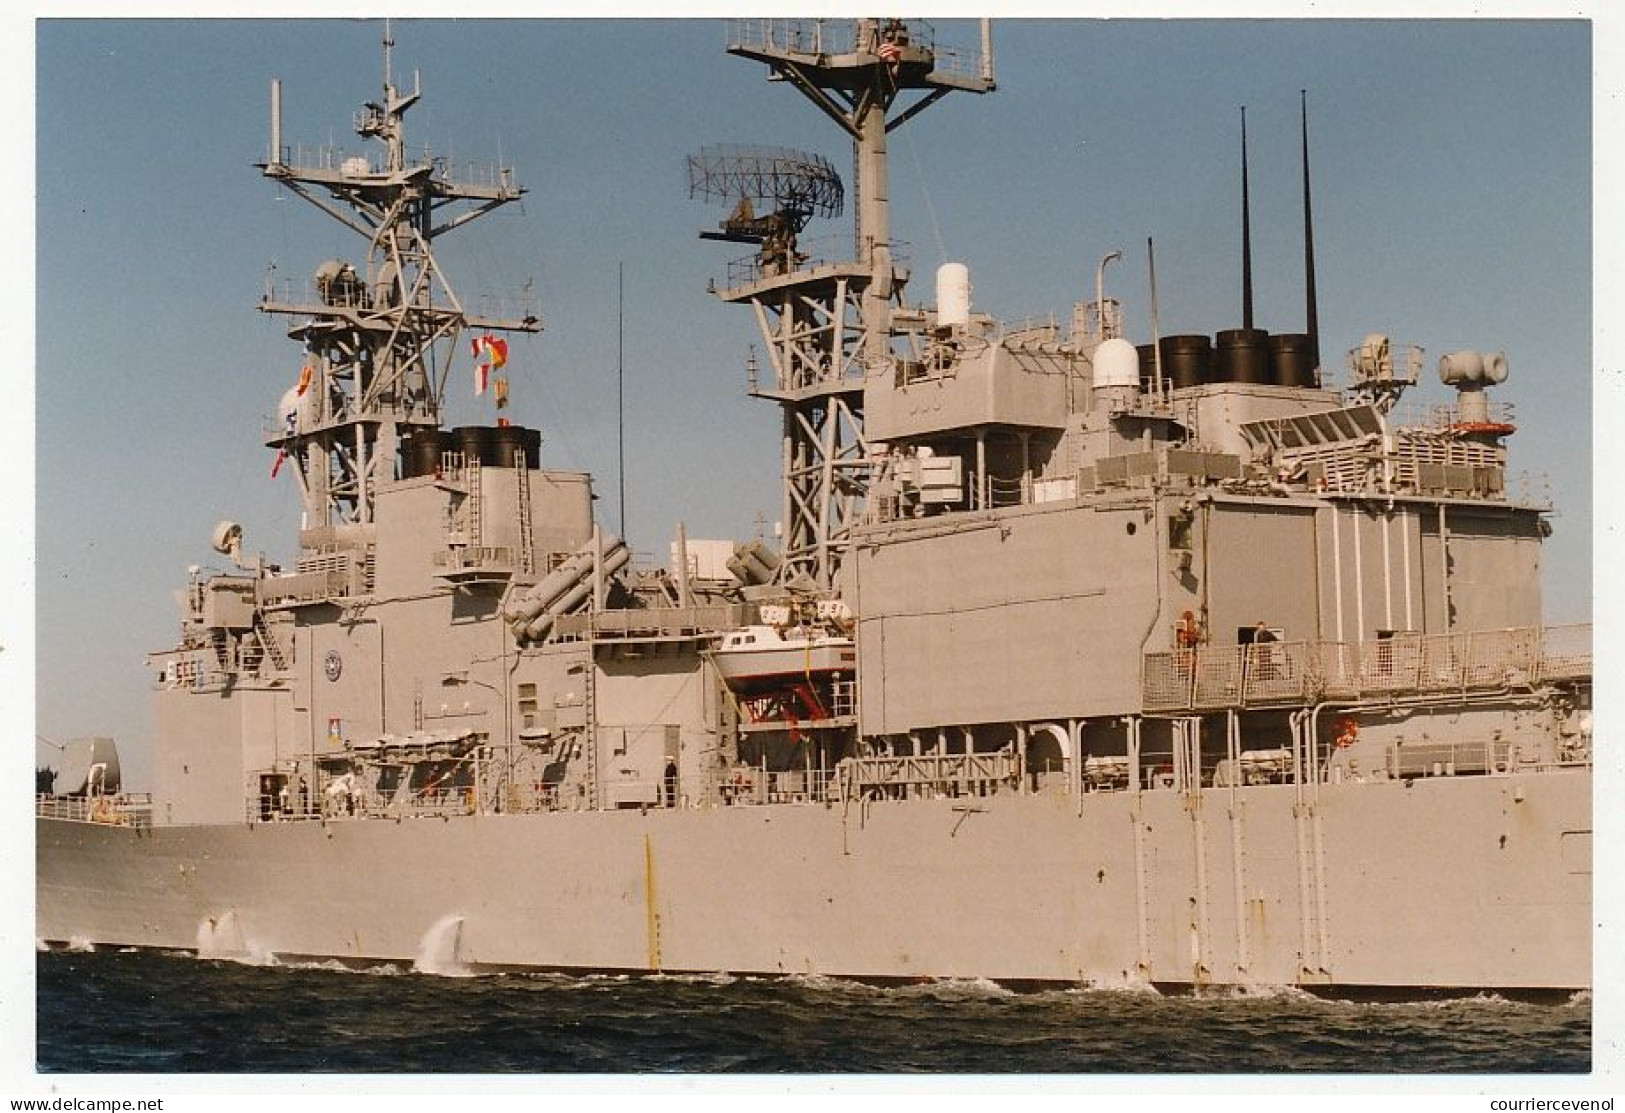 8 Photos Couleur Format Env. 10cm X 15cm - U.S. Navy Destroyer USS Hayler (DD 997) - Mars 1997 - Bateaux